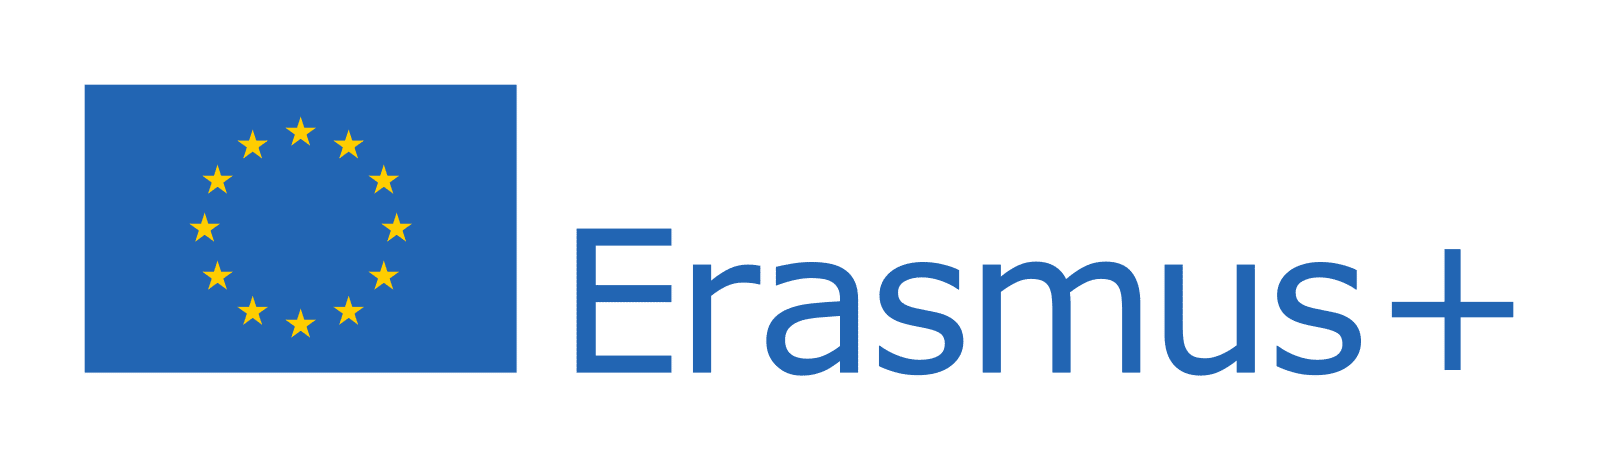 erasmusplus-logo_transparent